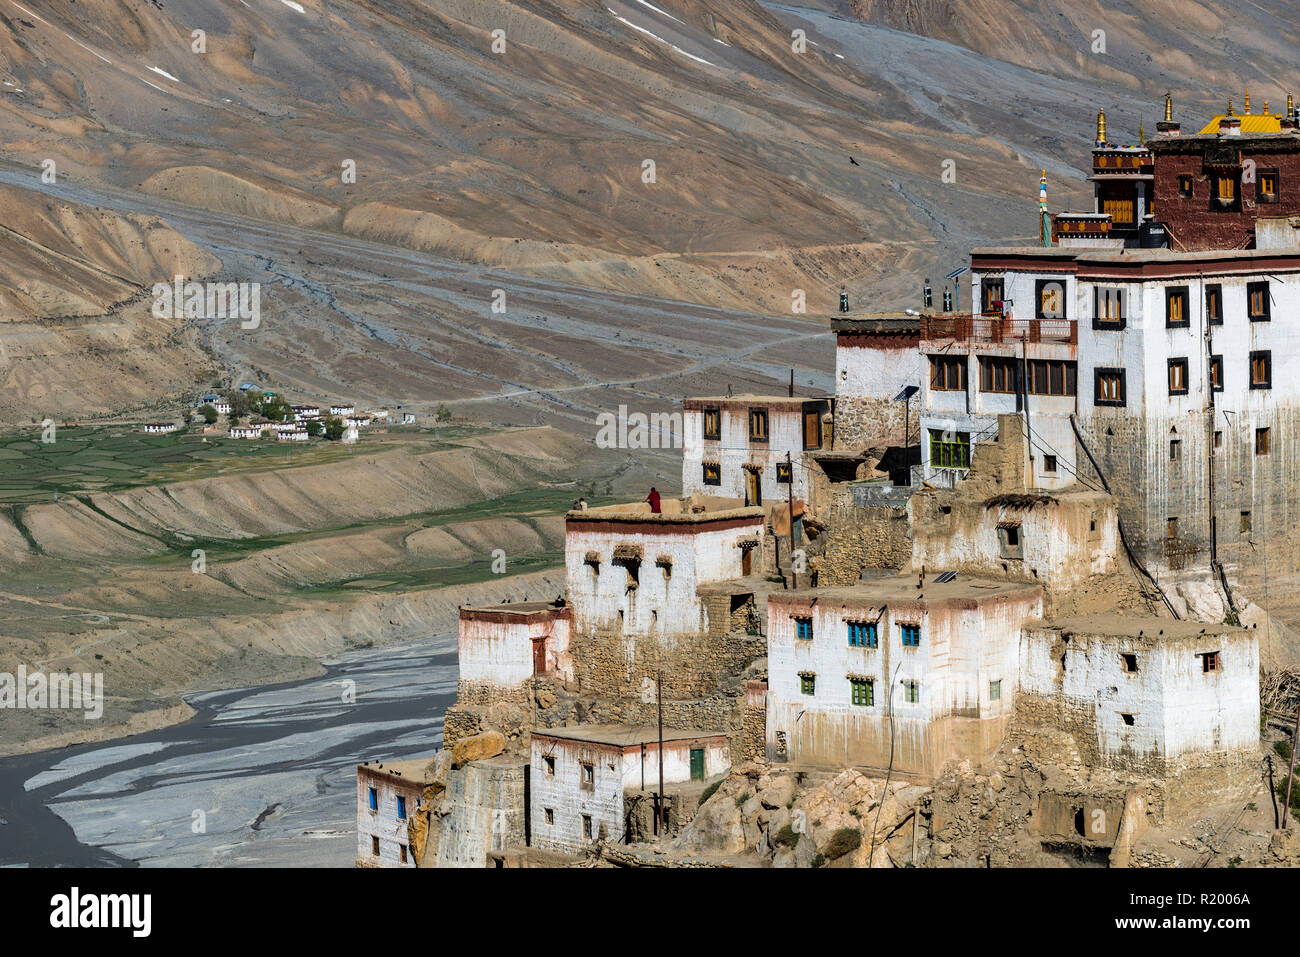 Vista aerea su Ki Gompa, un tibetano monastero buddista situato sulla sommità di una collina ad una altitudine di 4,166 metri, la Spiti Valley in background Foto Stock